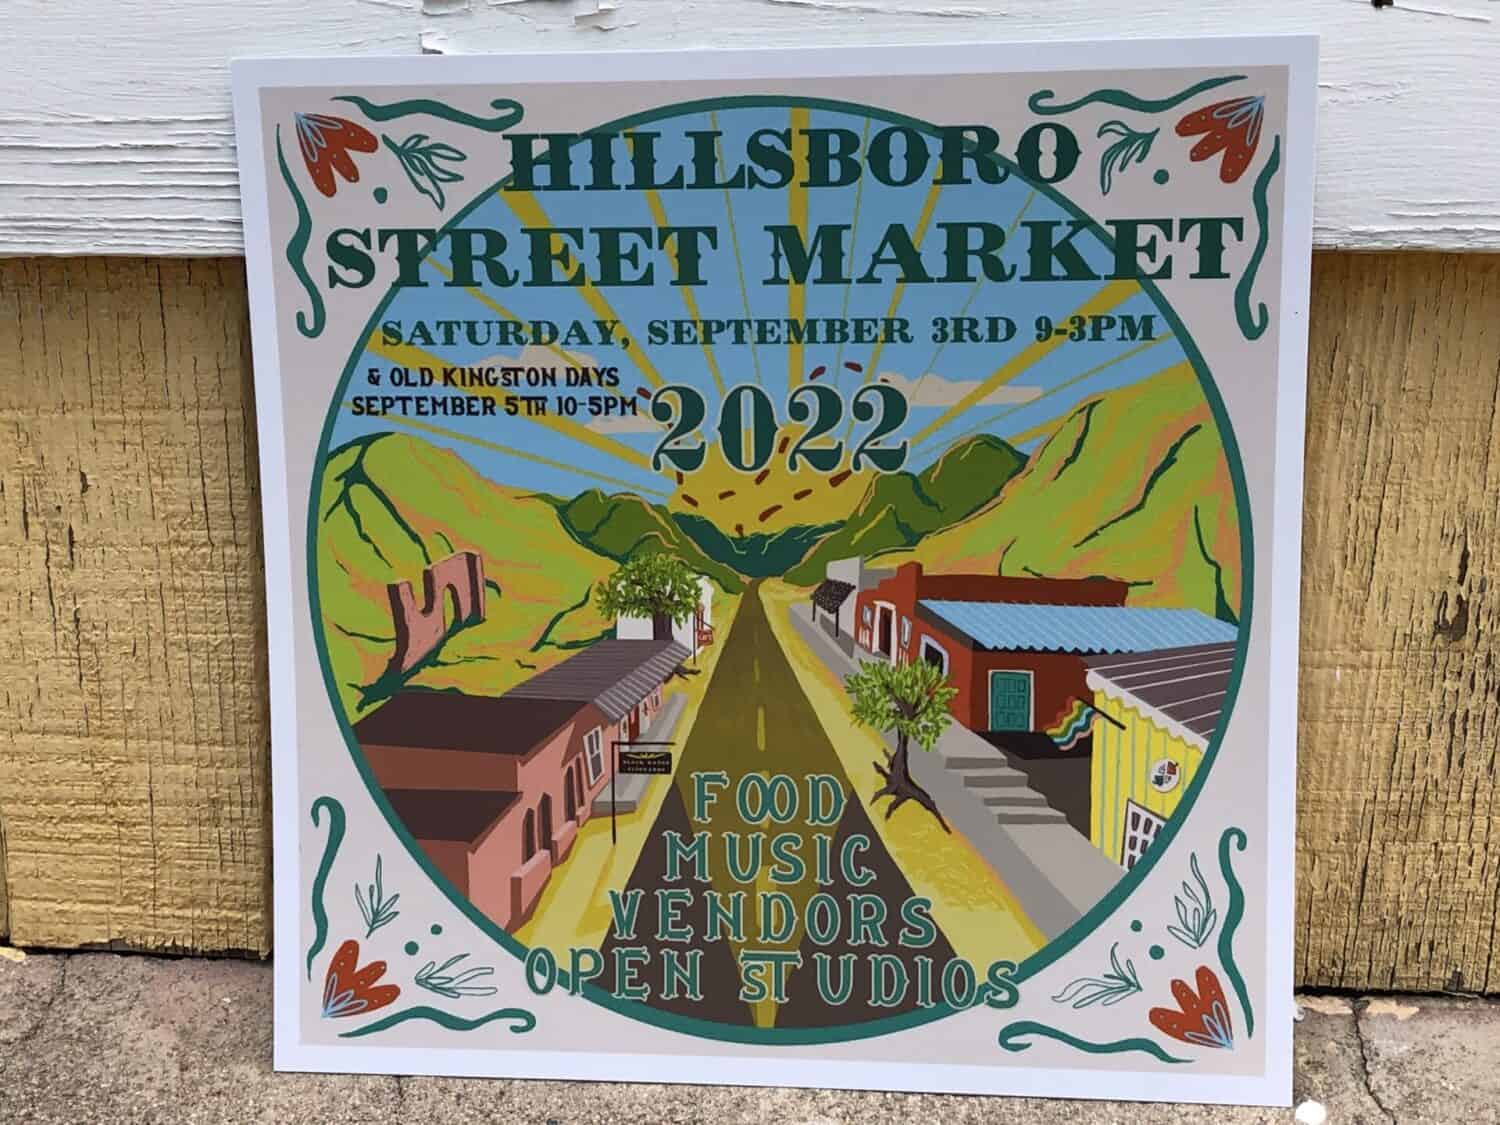 poster of the 1st Hillsboro street market on Saturday September 3rd.